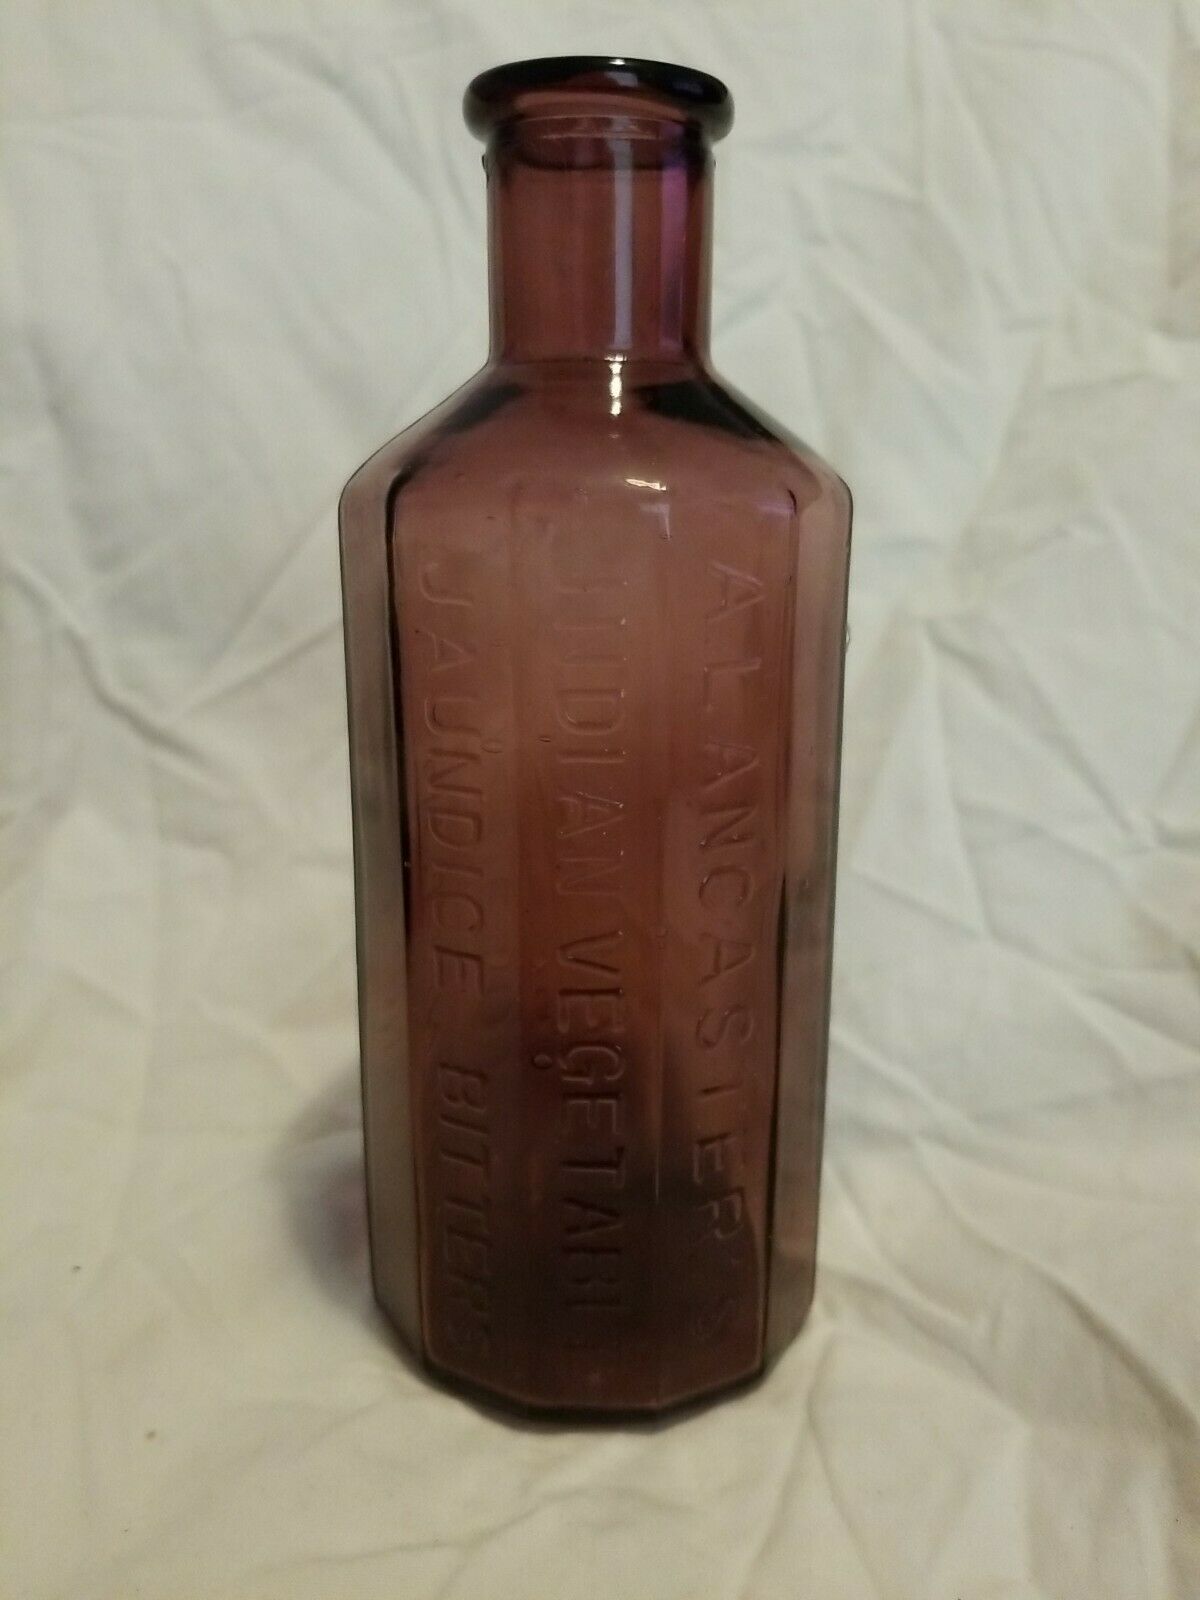 Antique A. Lancaster's Indian Vegetable Jaundice Bitters Bottle 1852 Purple